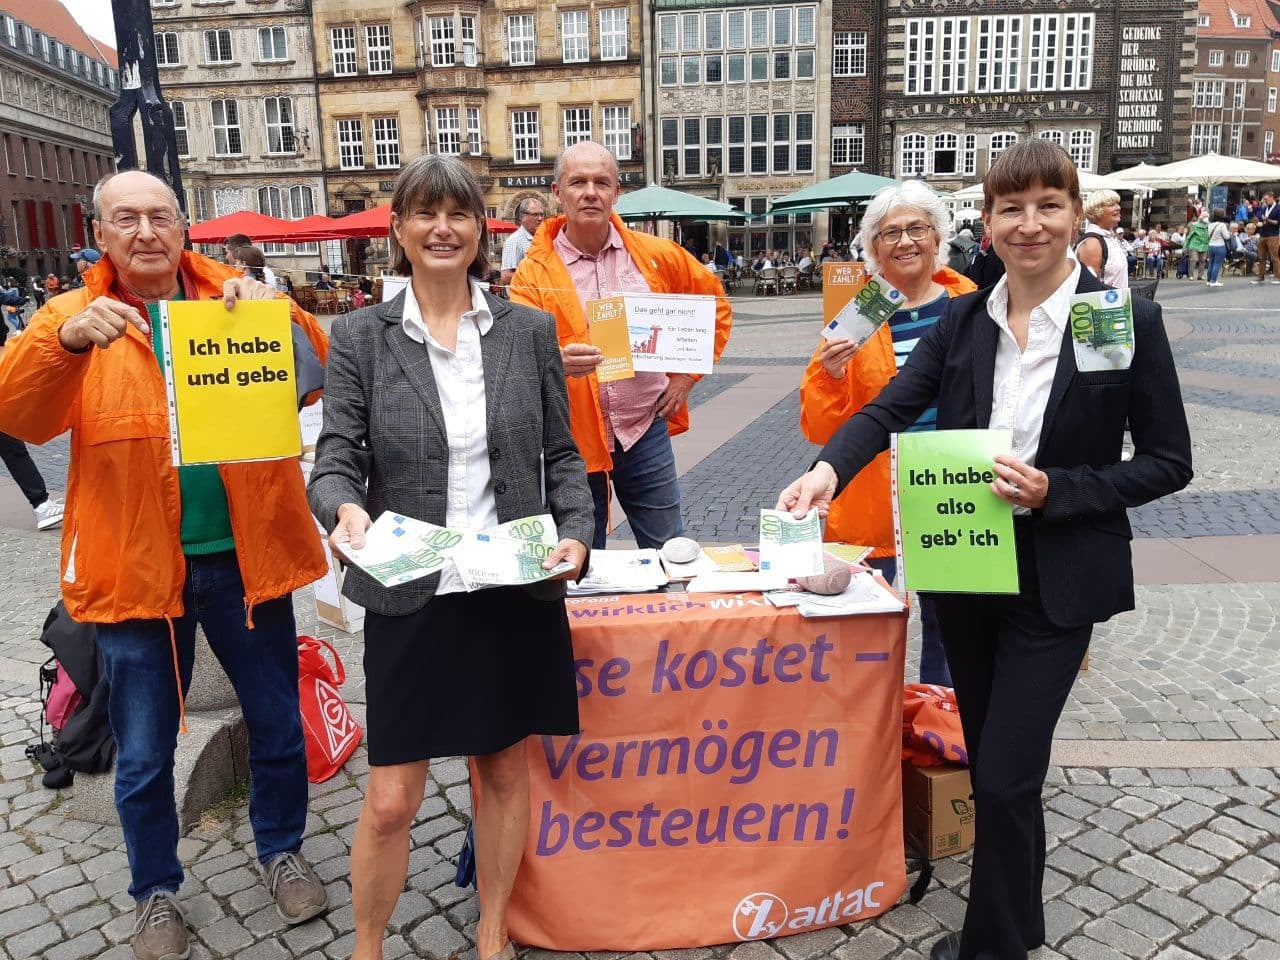 Bild von einem Infostand von Attac auf dem Marktplatz in Bremen, zu sehen sind Aktivist*innen in orangen Jacken und davor zwei Frauen im Buiseneskostüm mit 100€ Scheinen, dazu ein kleines Plakat auf dem "Ich habe, also gebe ich" steht.